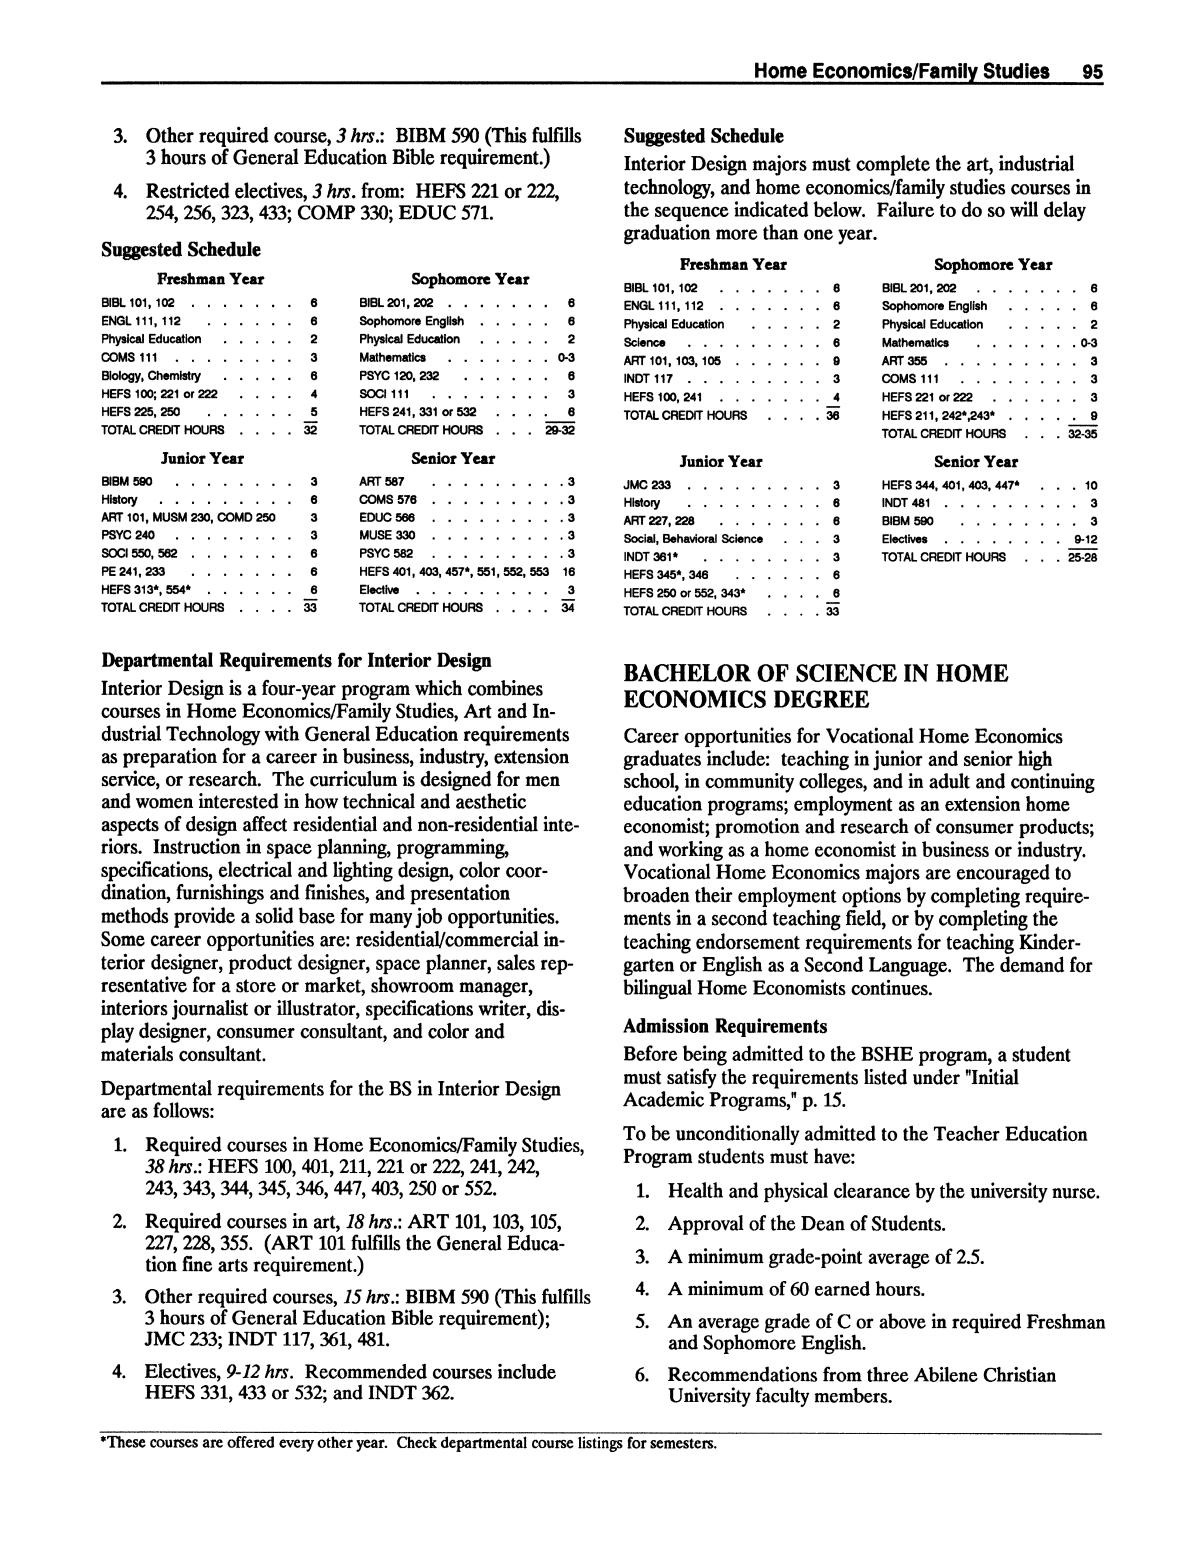 Catalog of Abilene Christian University, 1988-1989
                                                
                                                    95
                                                